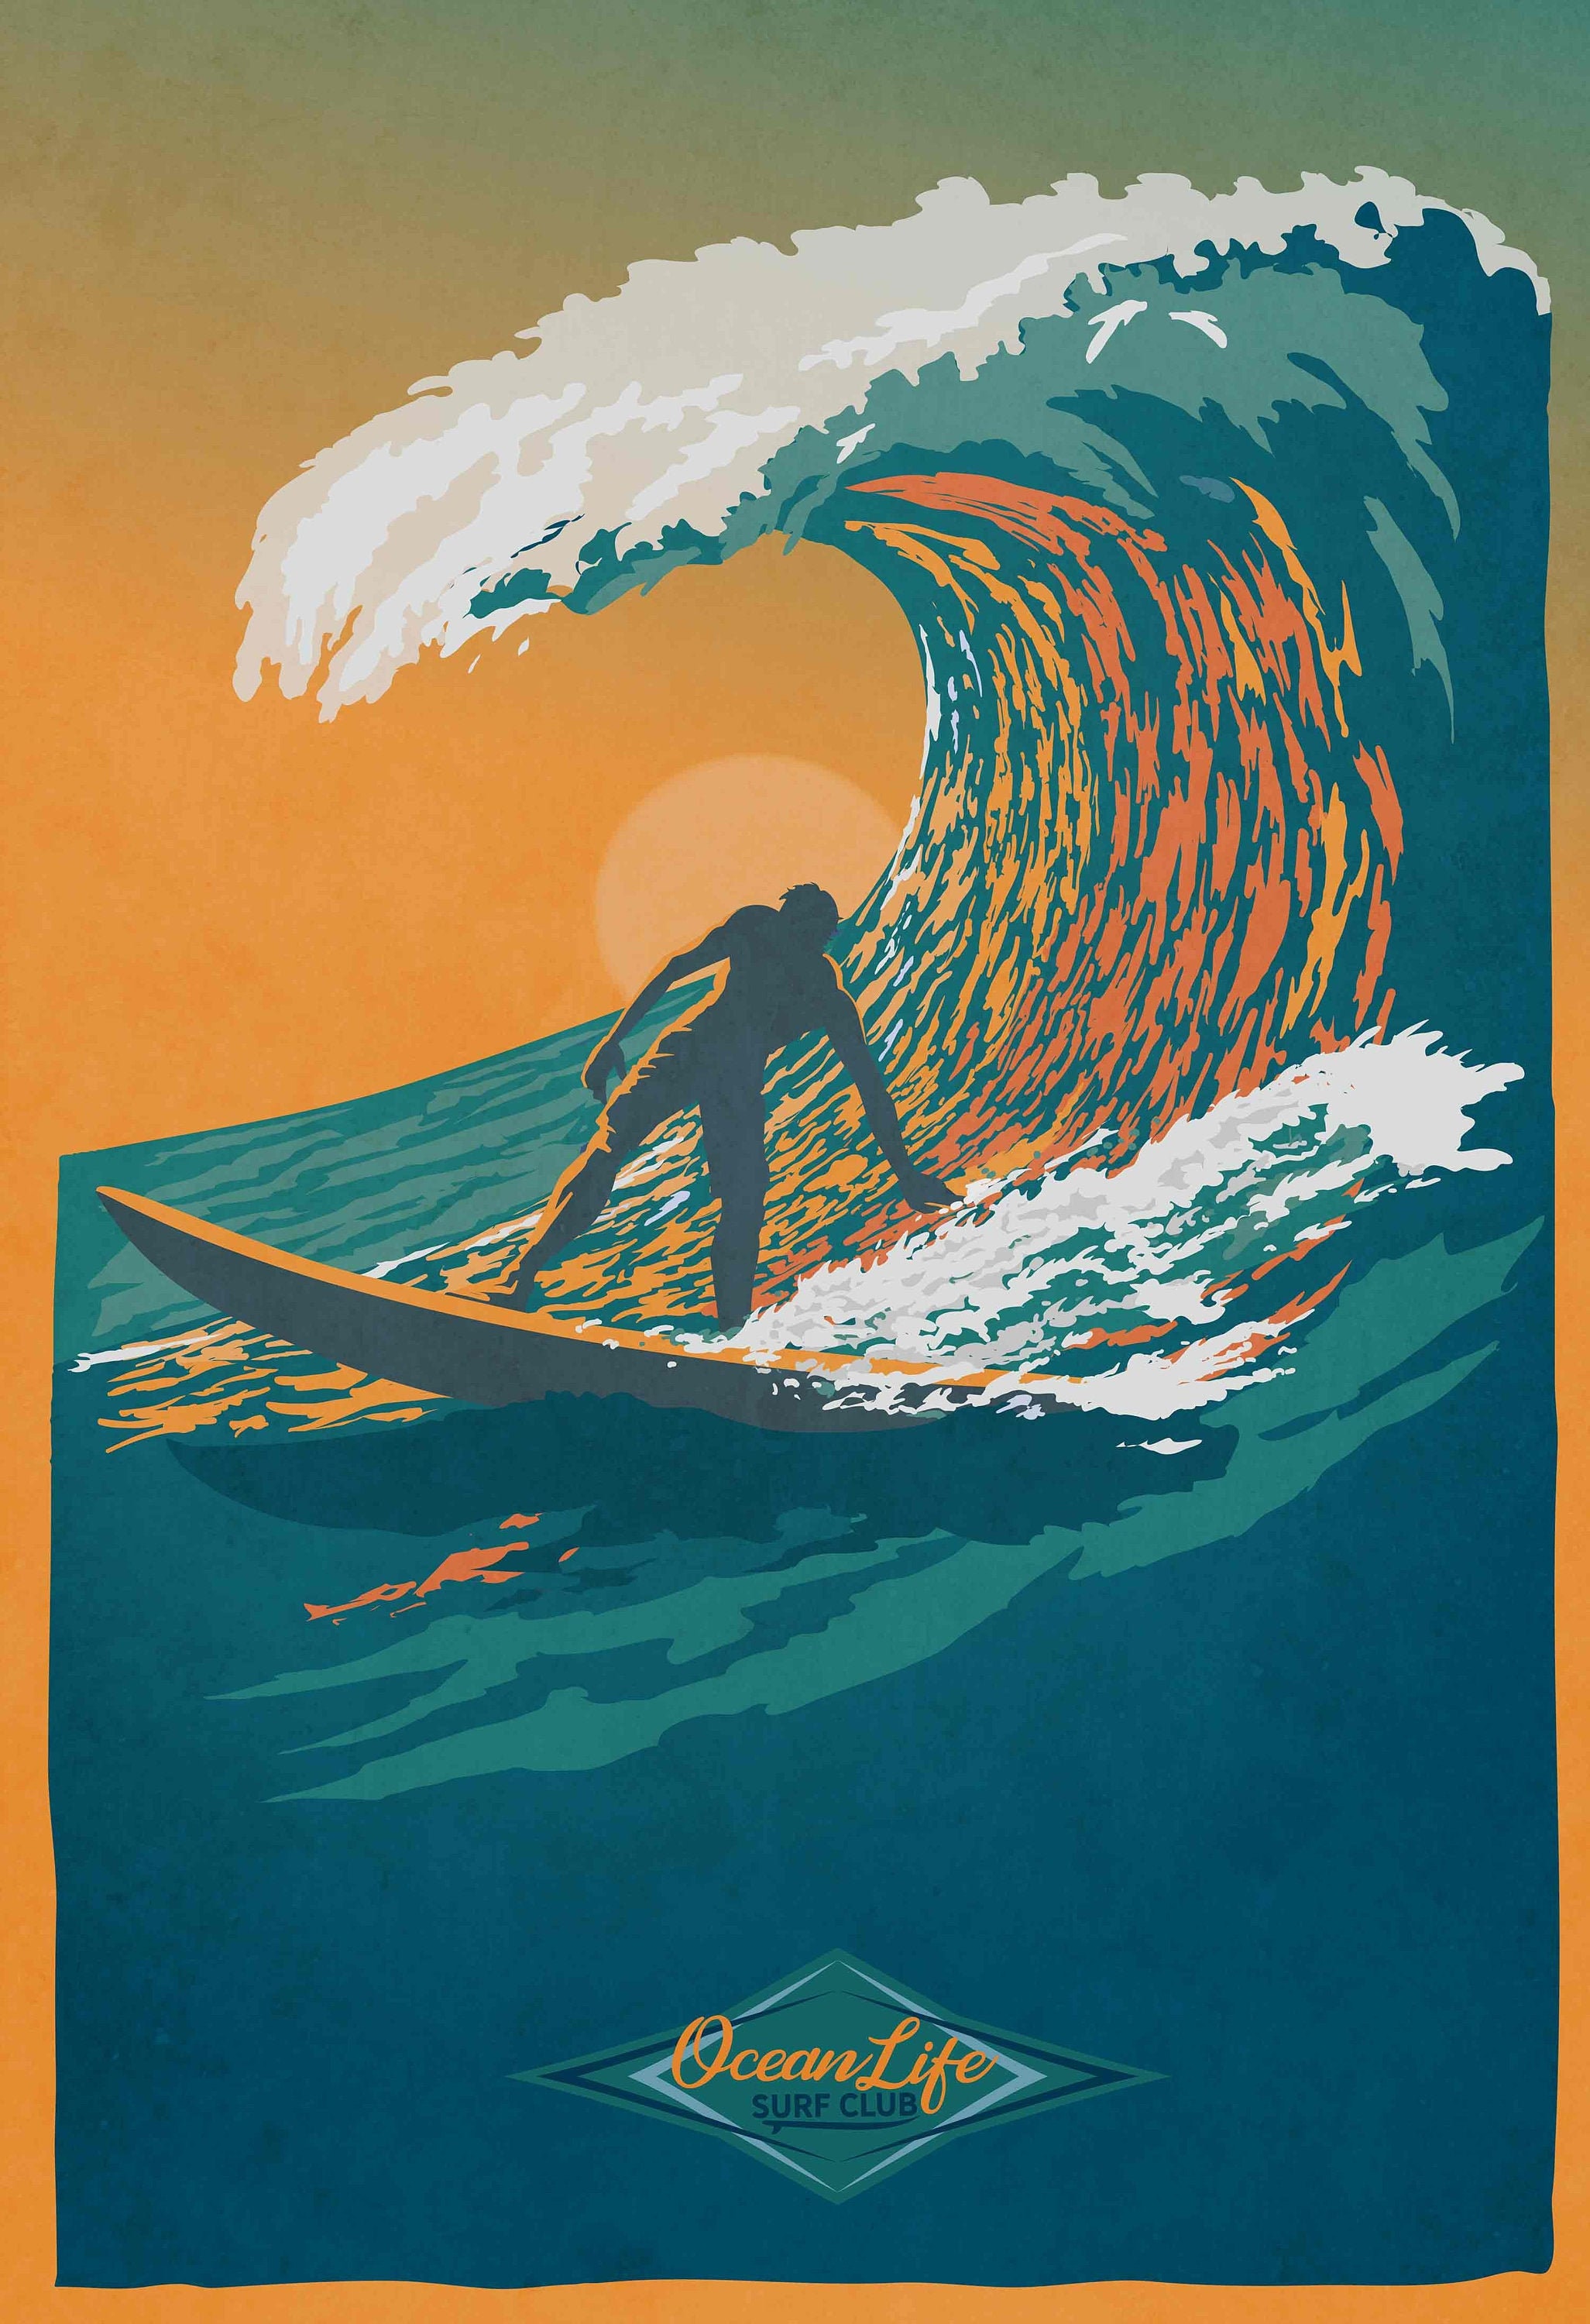 Ocean Life Surf Club Retro Surf Art Poster Illustration Etsy